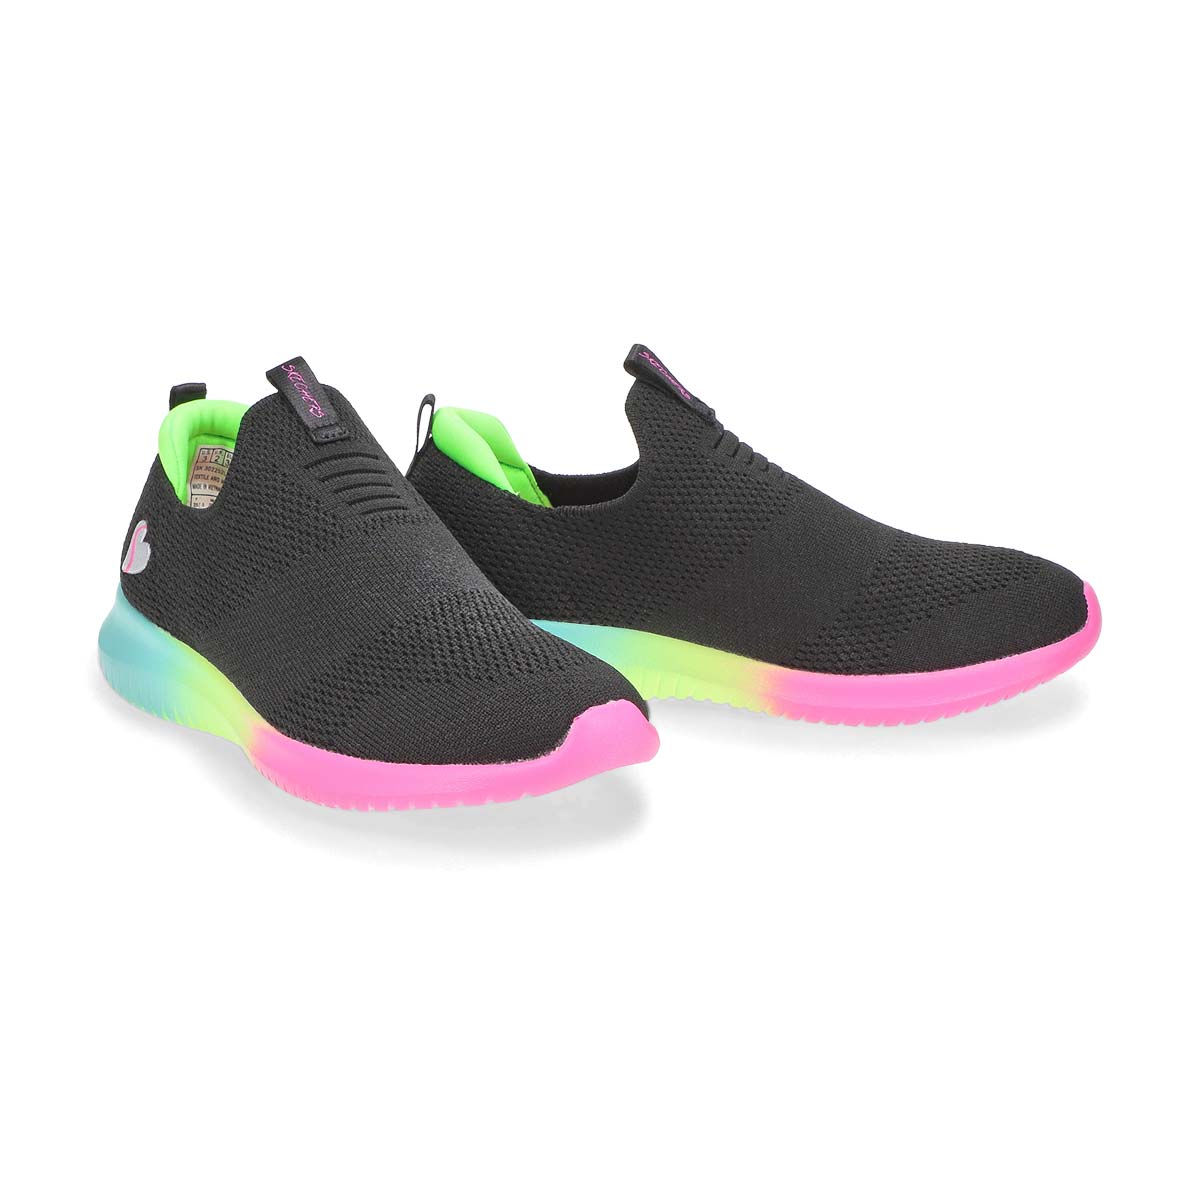 Girls' Ultra Flex Slip On Sneaker -Black/Multi